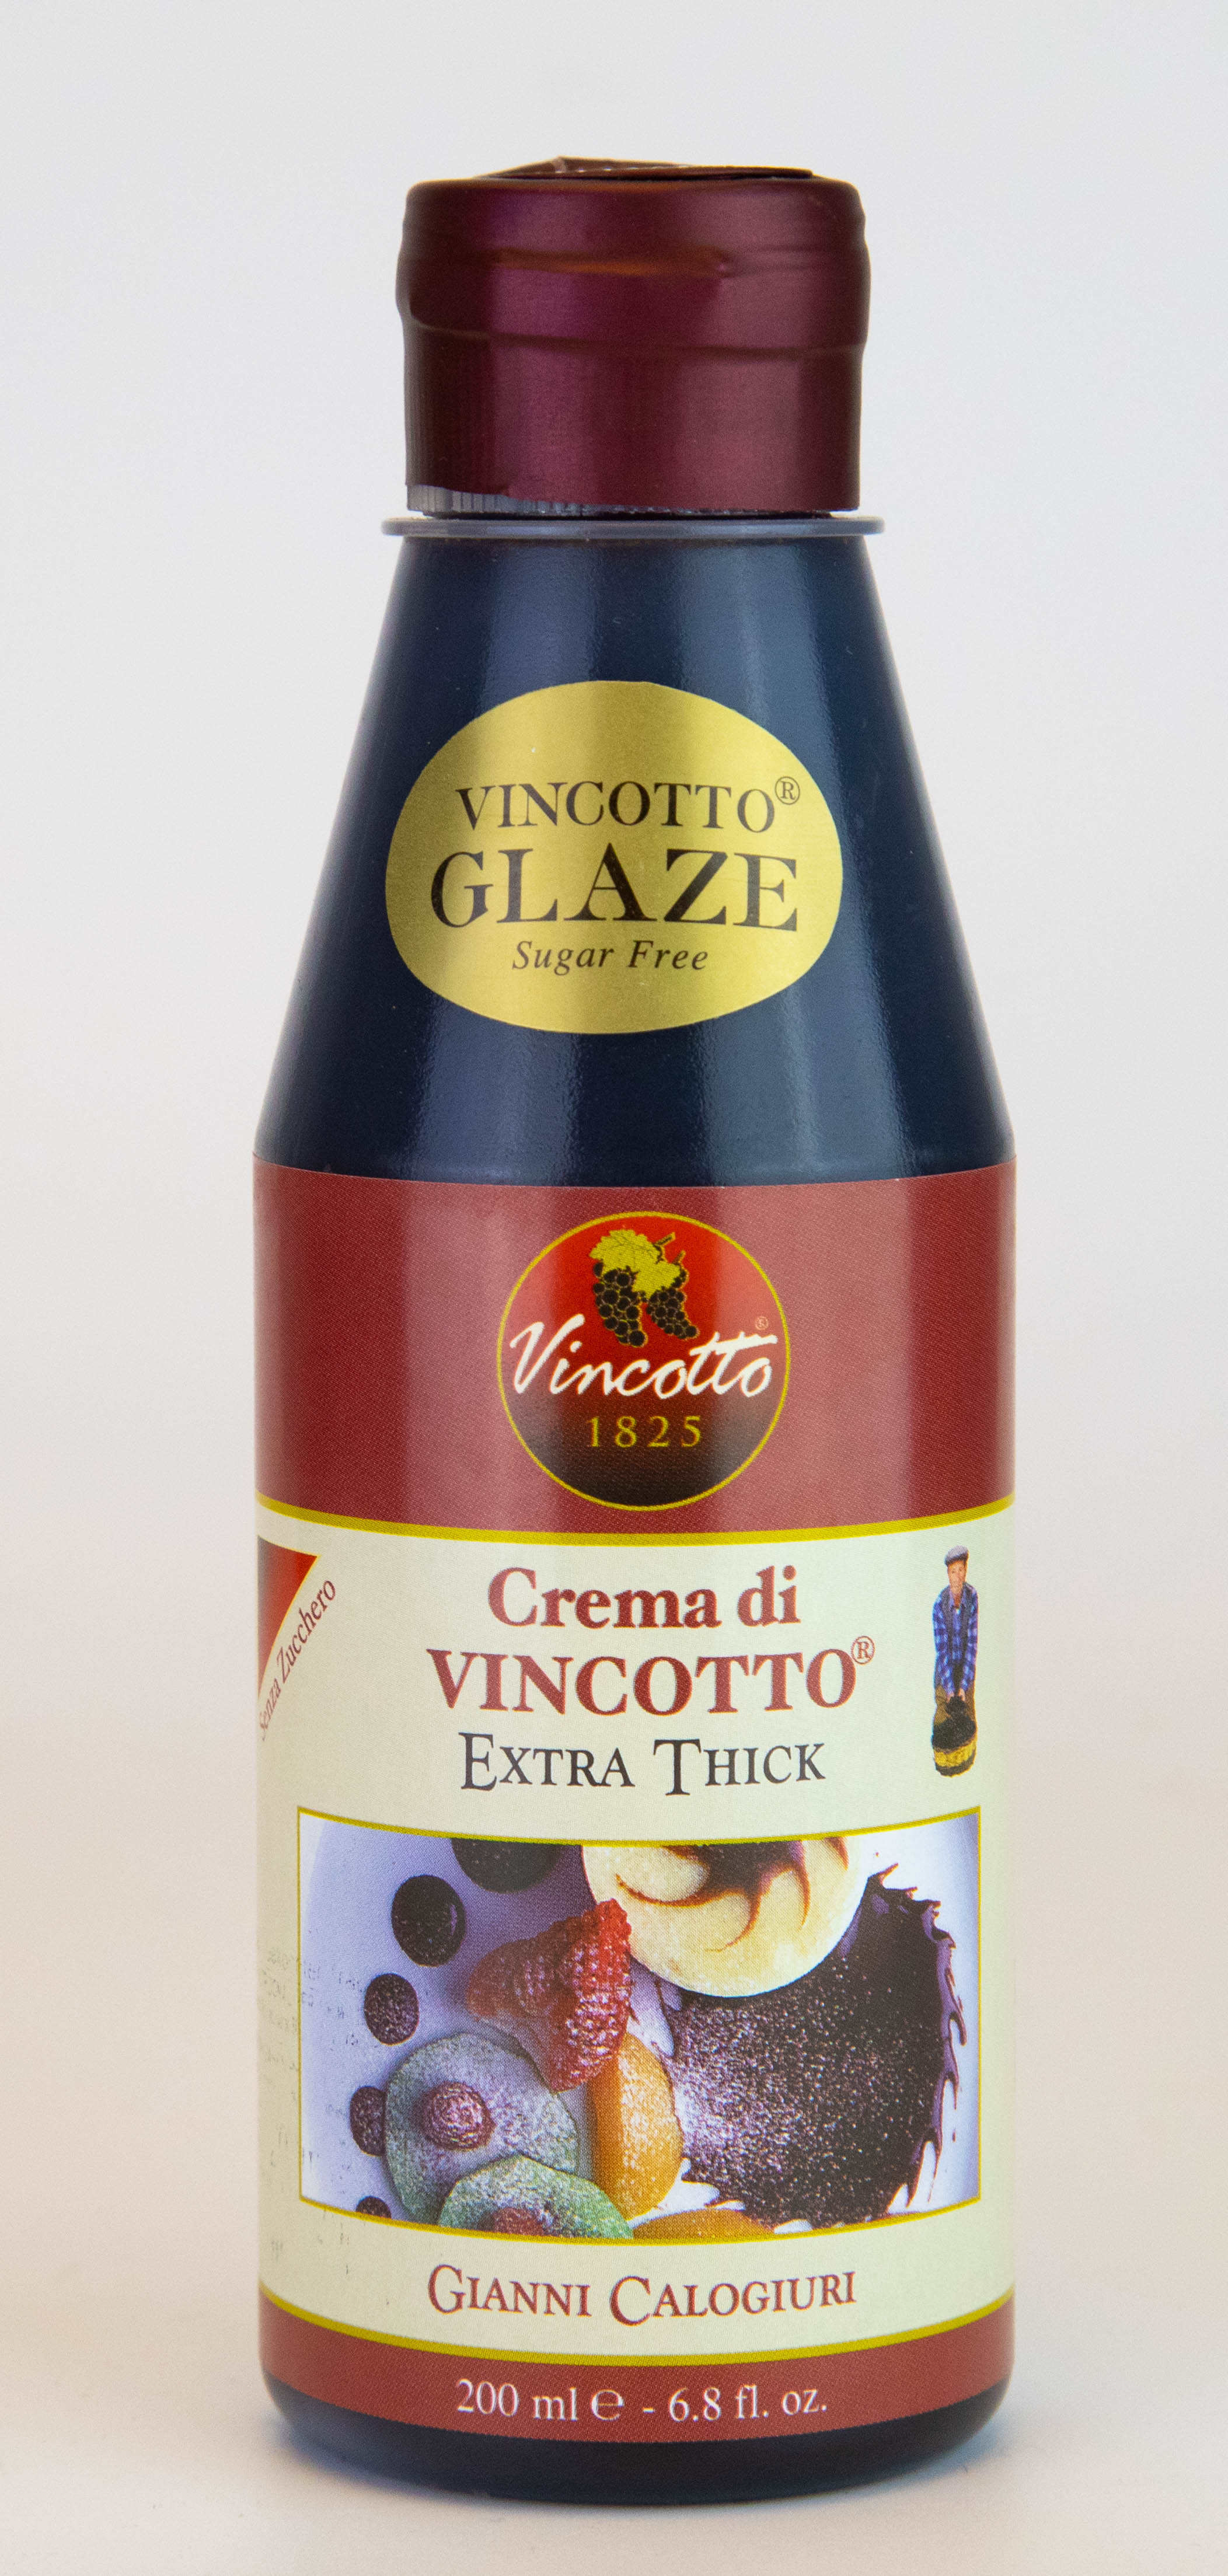 Crema di Vincotto originale bottiglia da 200 ml